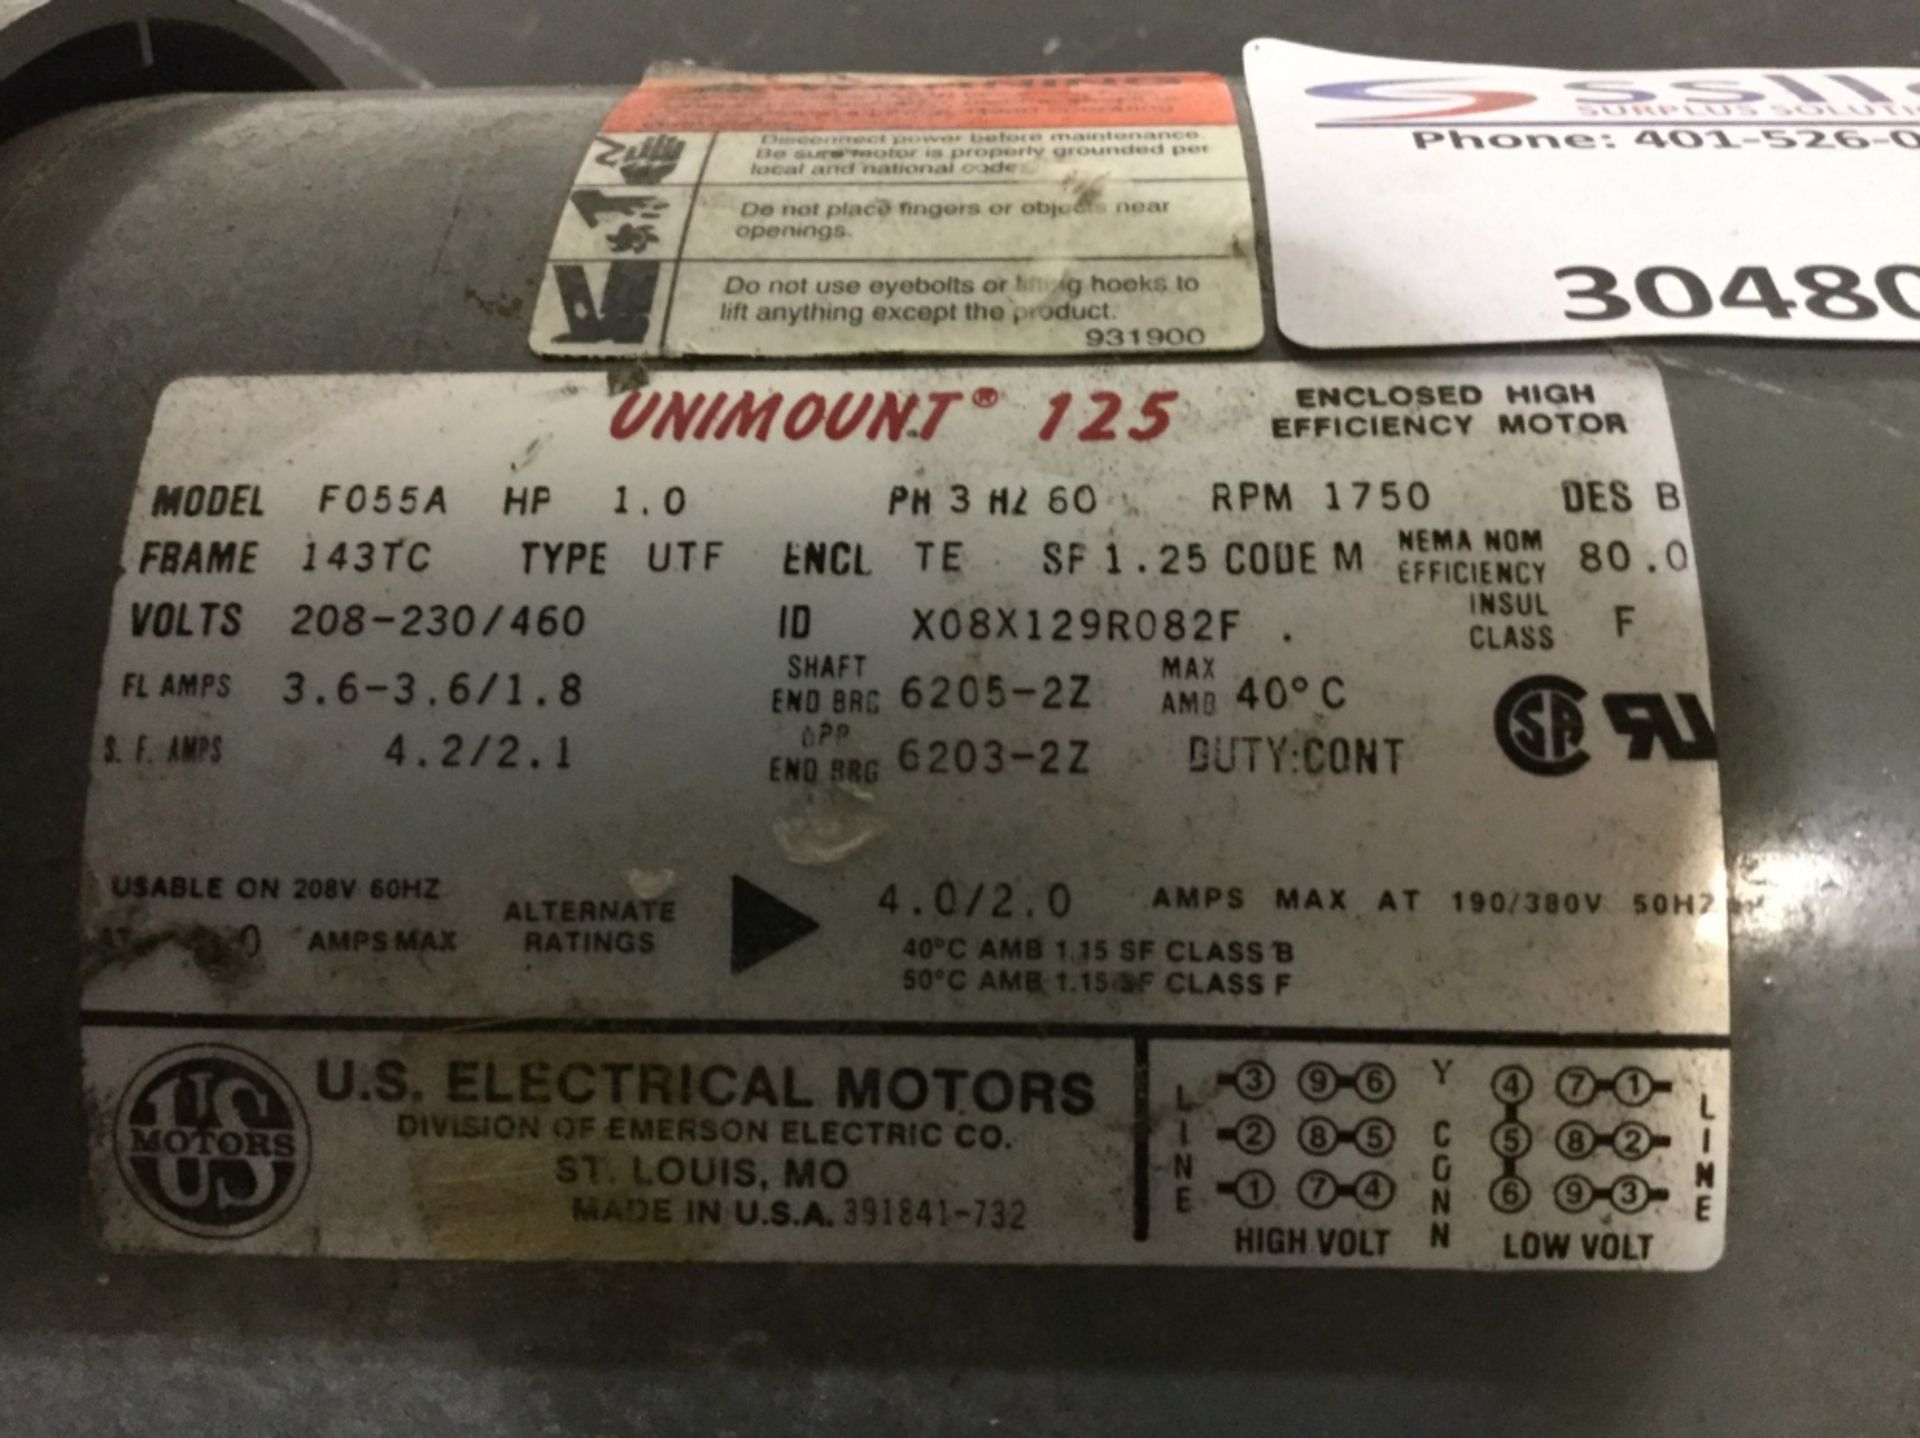 U.S. Electrical Motors UniMount 125 Motor - Image 2 of 2